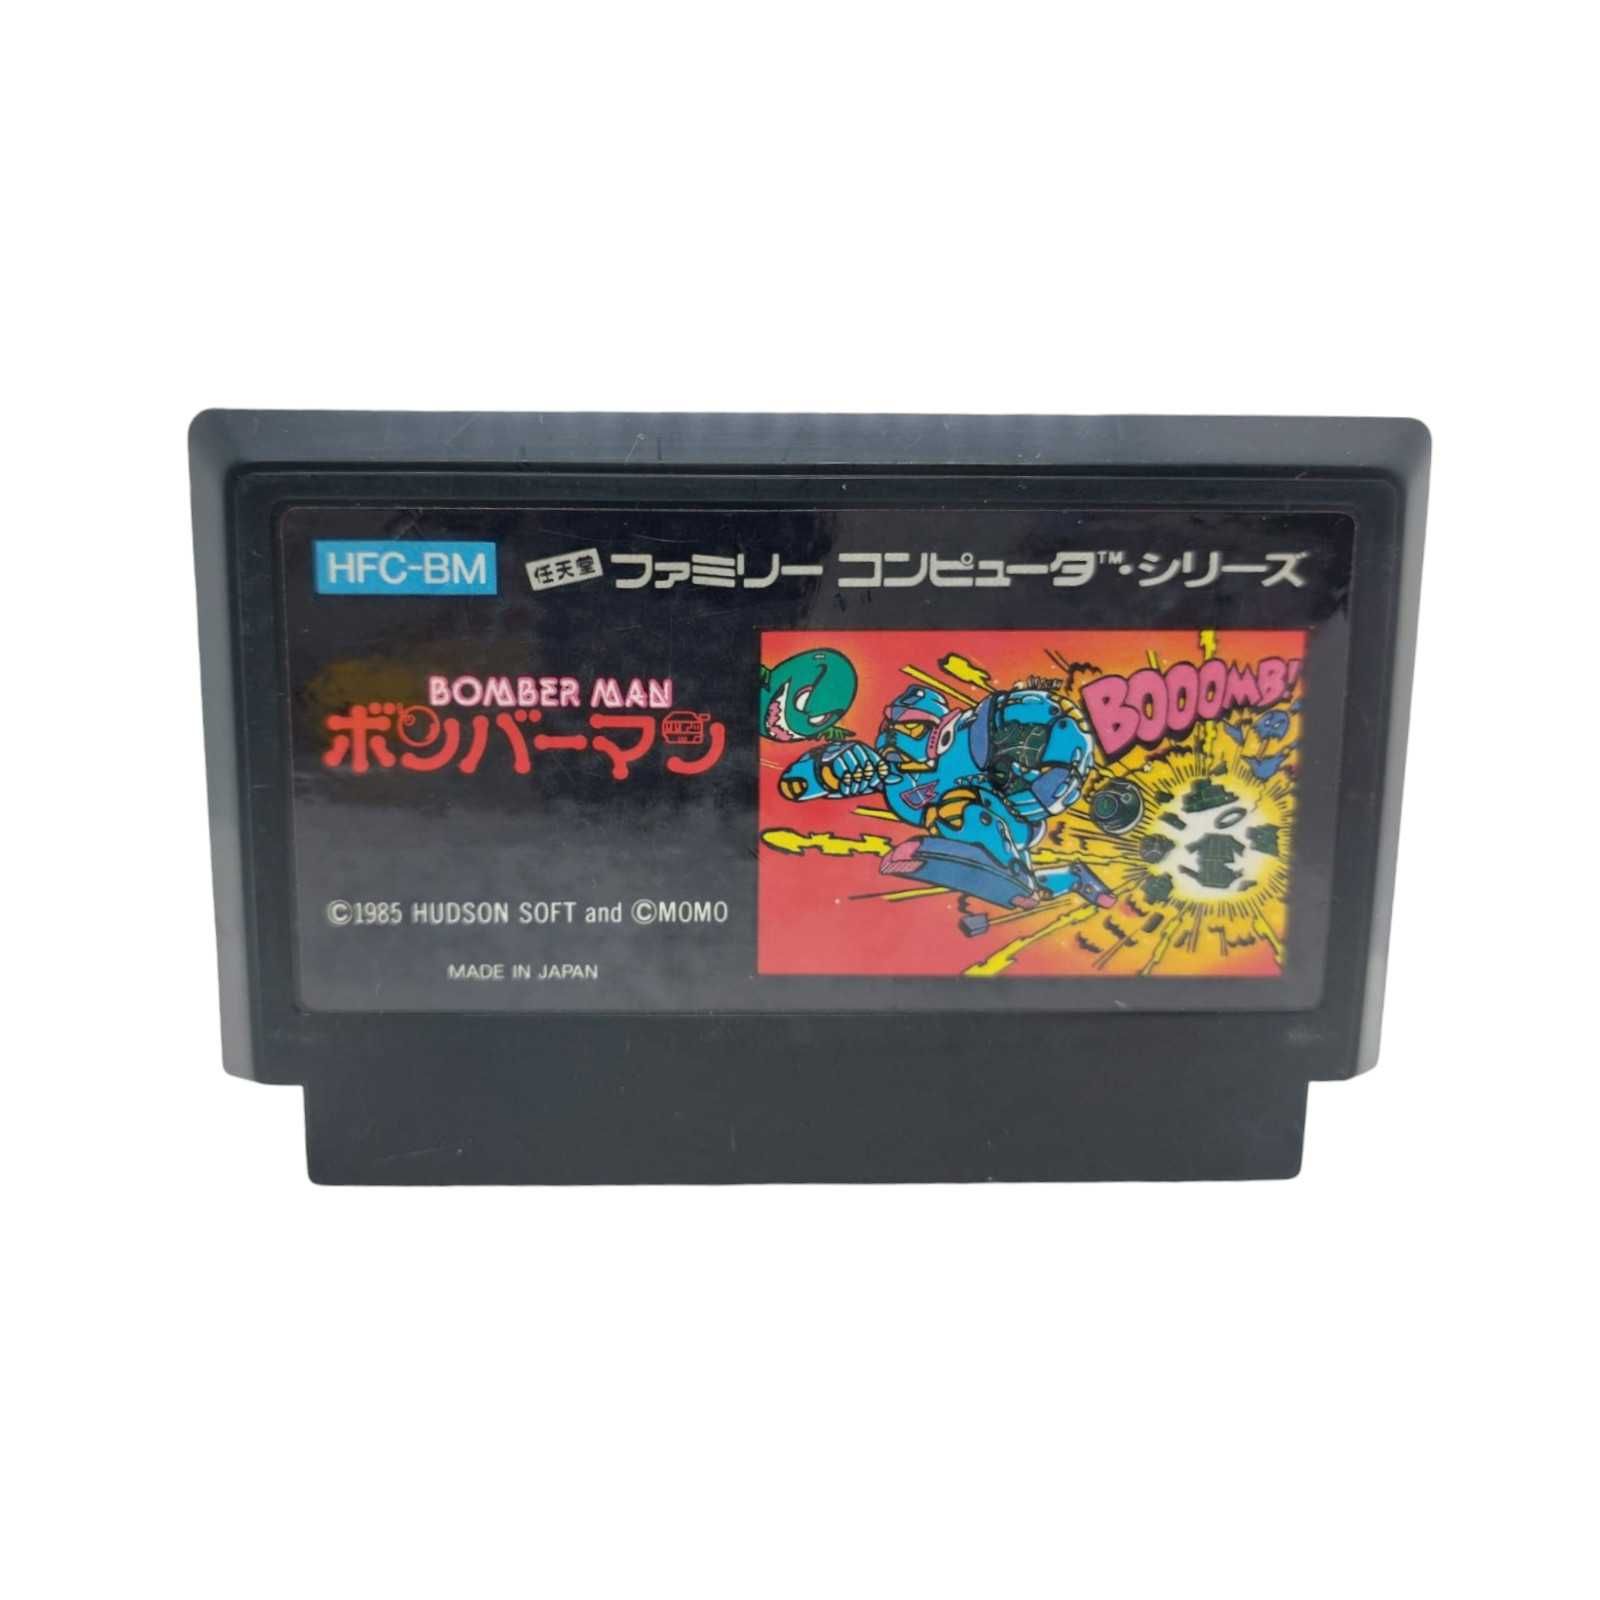 Bomberman Famicom Pegasus